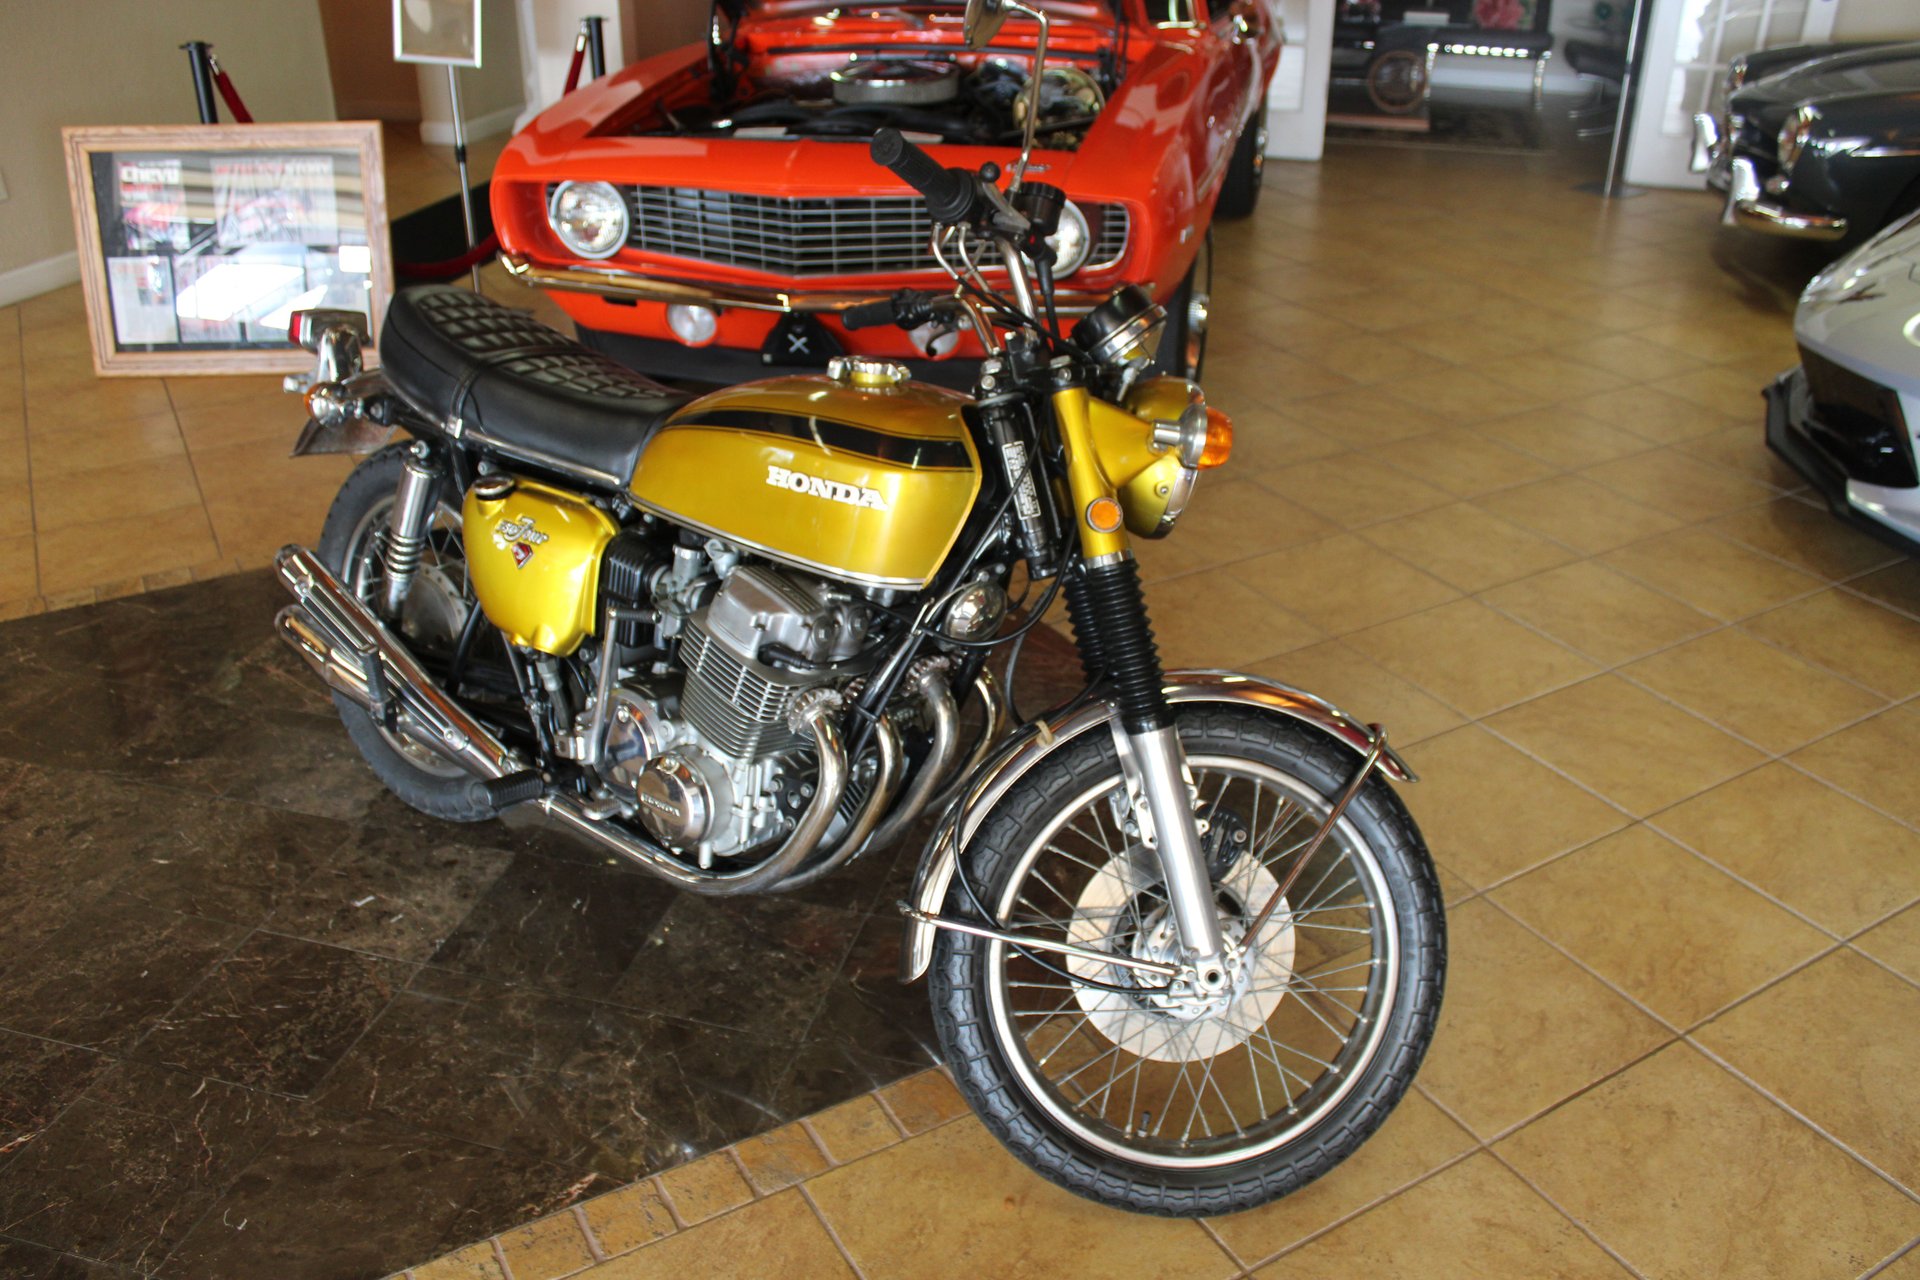 For Sale 1971 Honda CB750 four